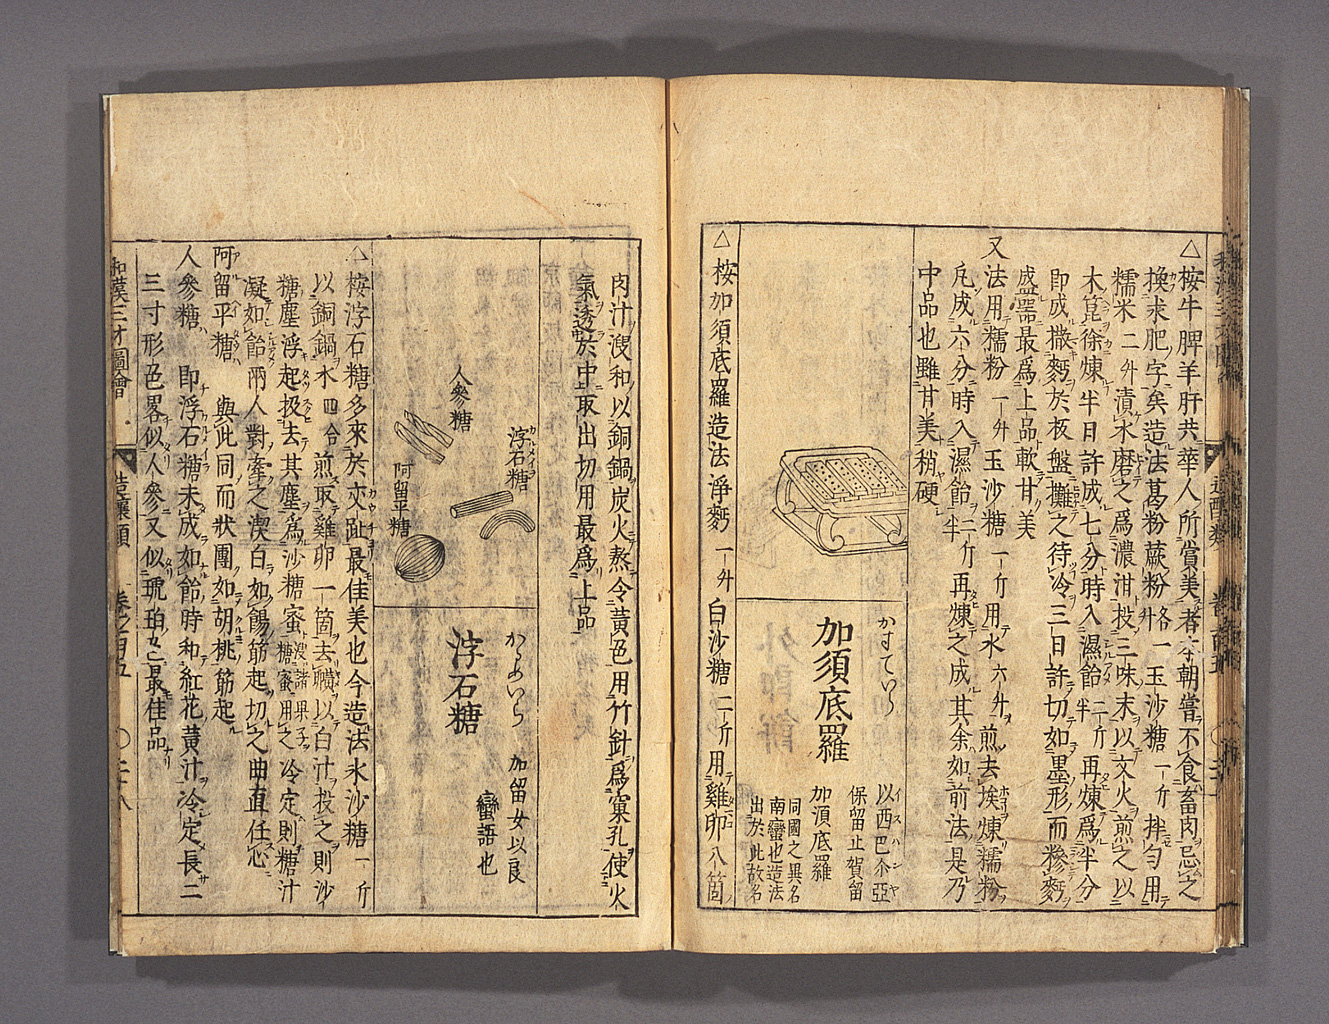 和漢三才図会（拡大画像 209-002） | 江戸時代の日蘭交流